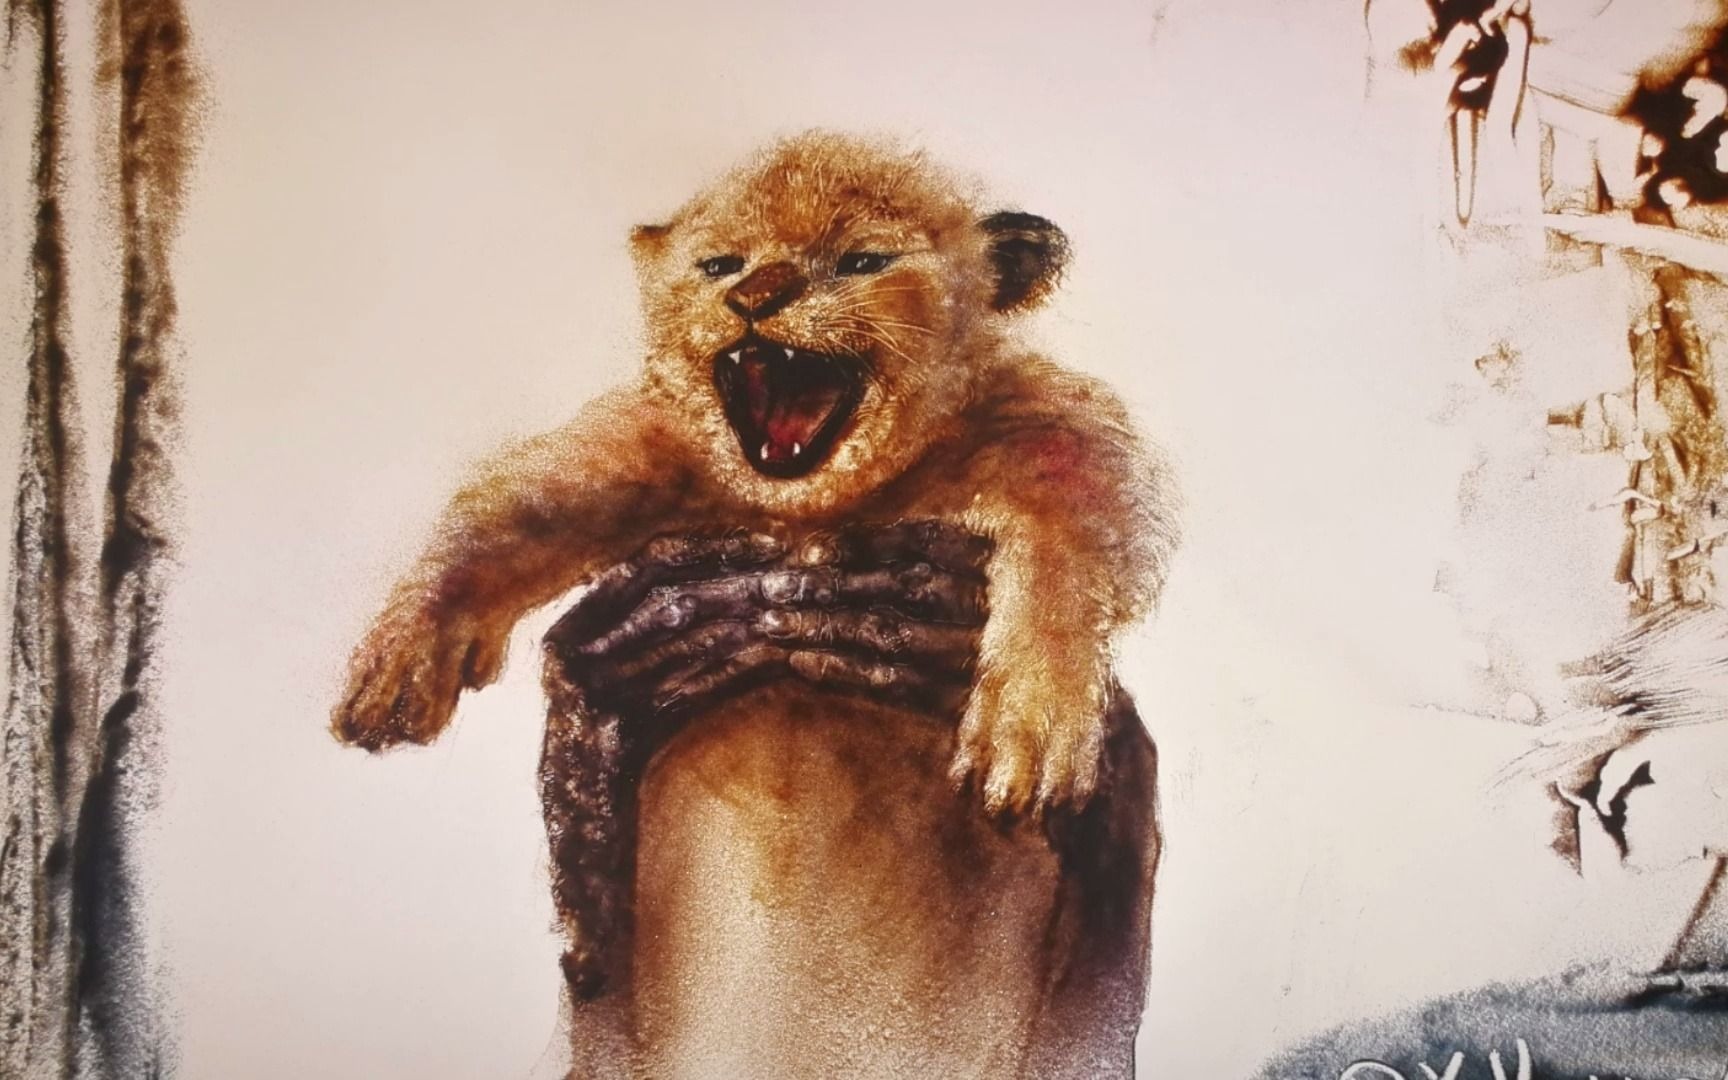 用沙画画《狮子王》动物们,向伴我长大的《狮子王》致敬!